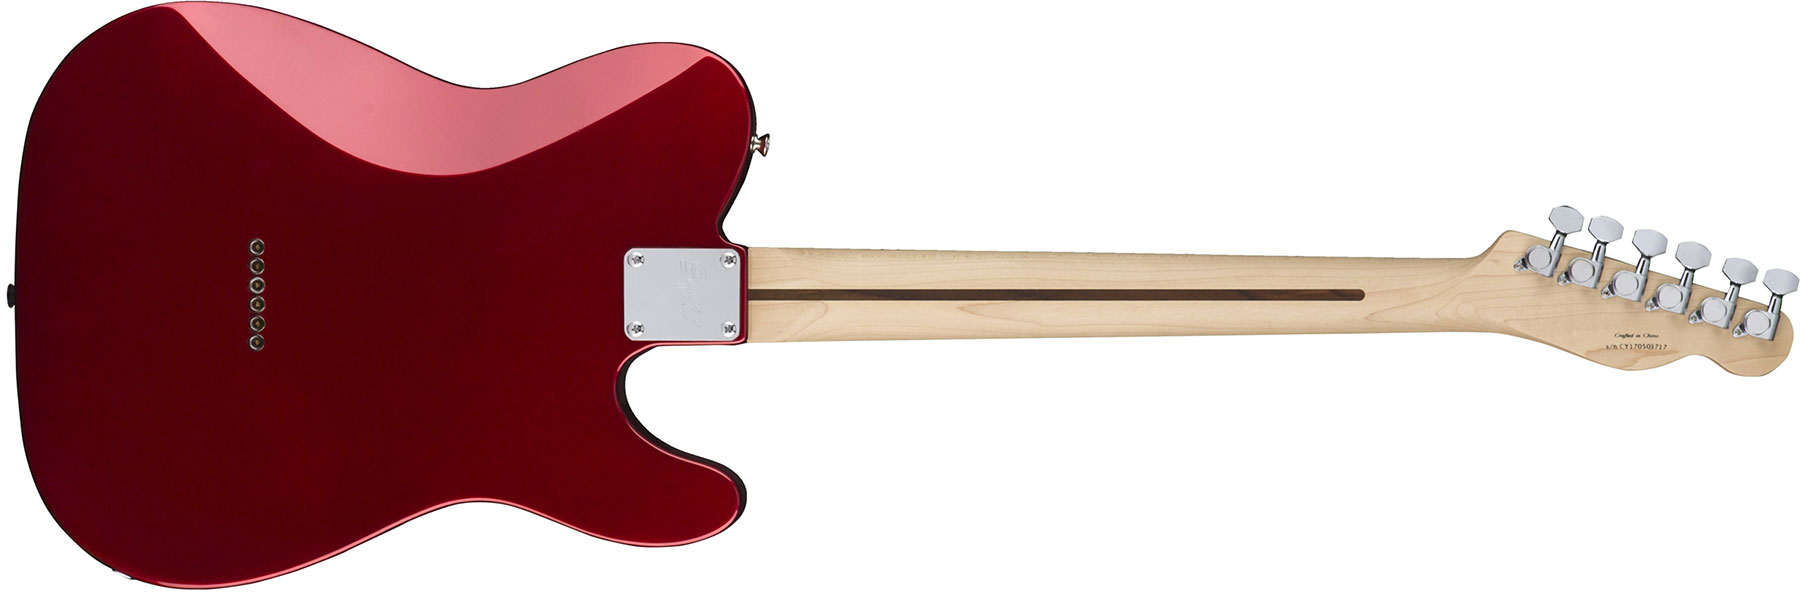 Squier Tele Contemporary Hh Lh Gaucher Mn - Dark Metallic Red - Left-handed electric guitar - Variation 1